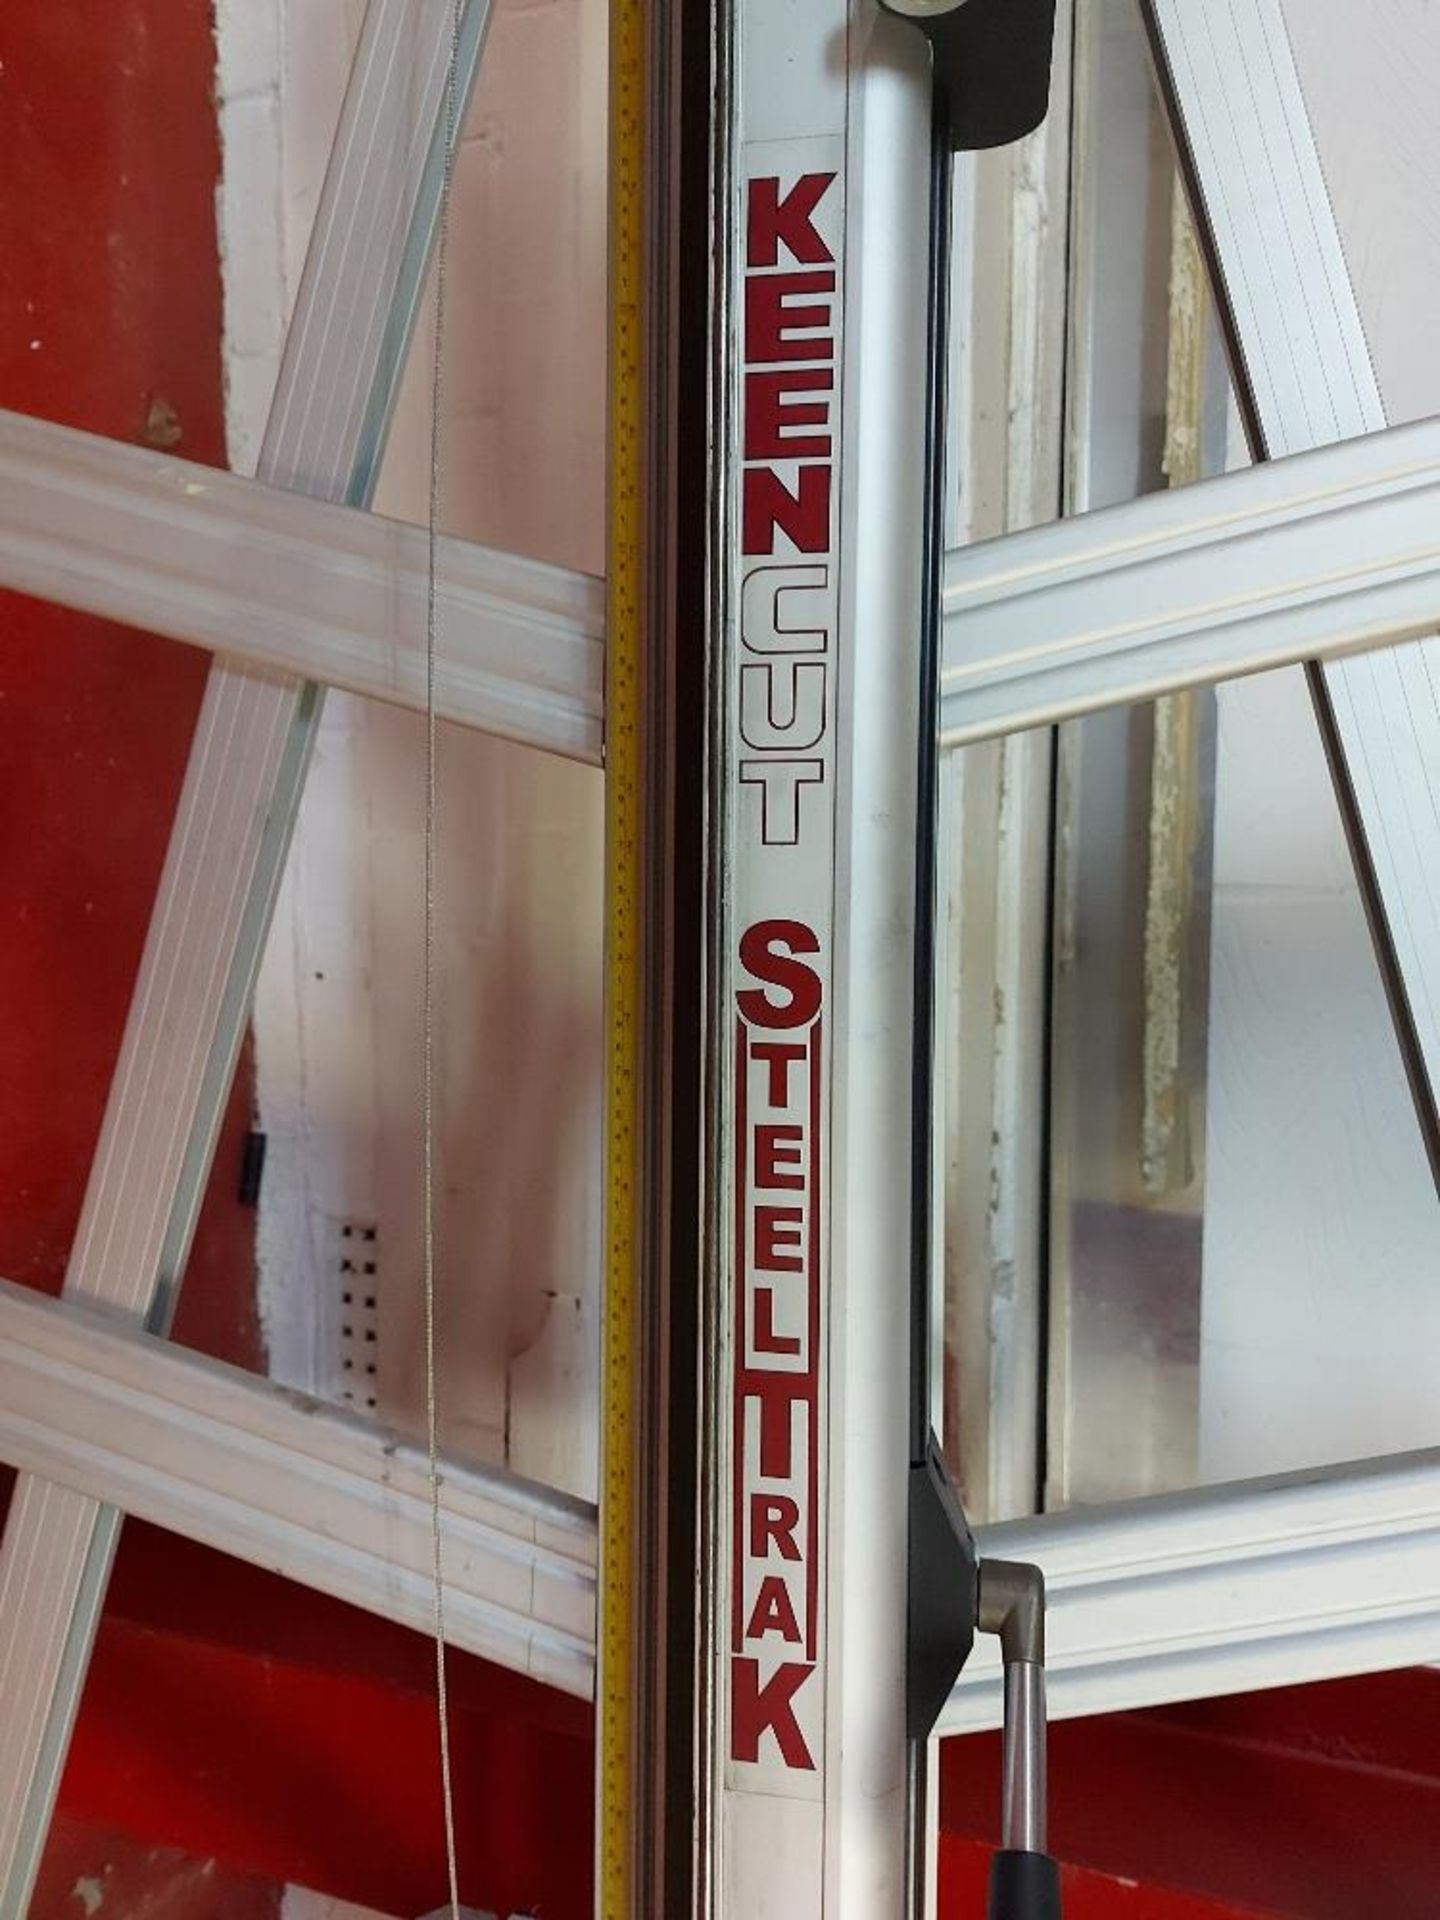 Keencut Steeltrak ST210 2100mm / 82" Vertical Cutter - Image 4 of 4